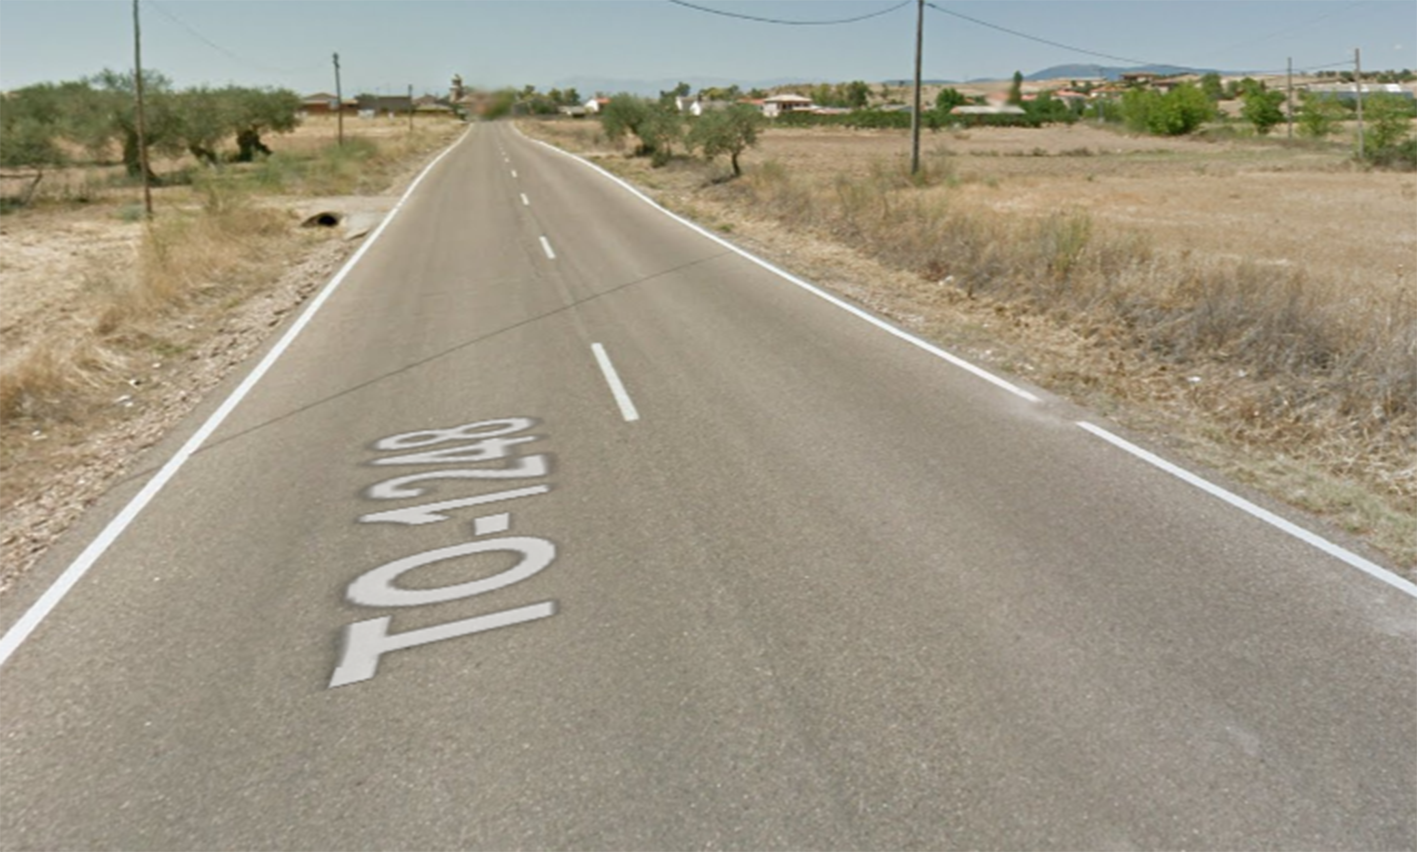 El atropello ha tenido lugar en una carretera próxima a Los Cerralbos, en la provincia de Talavera.